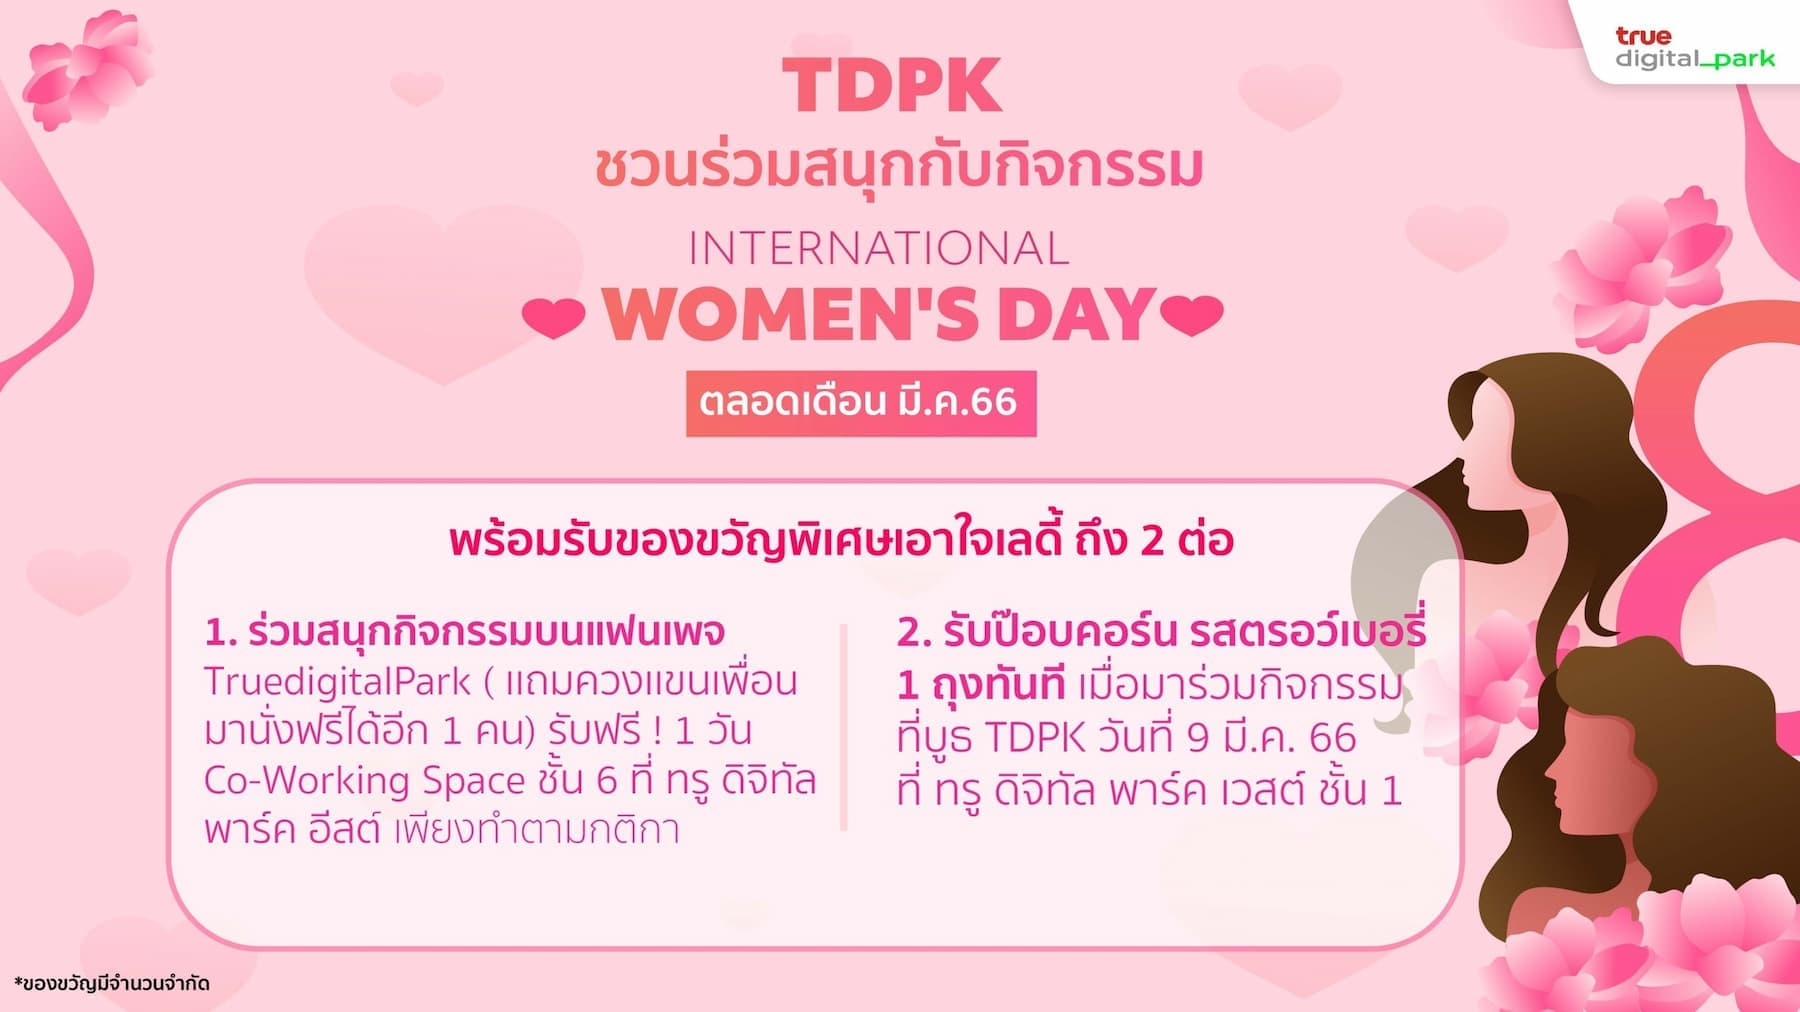 Join fun activities on International Women's Day